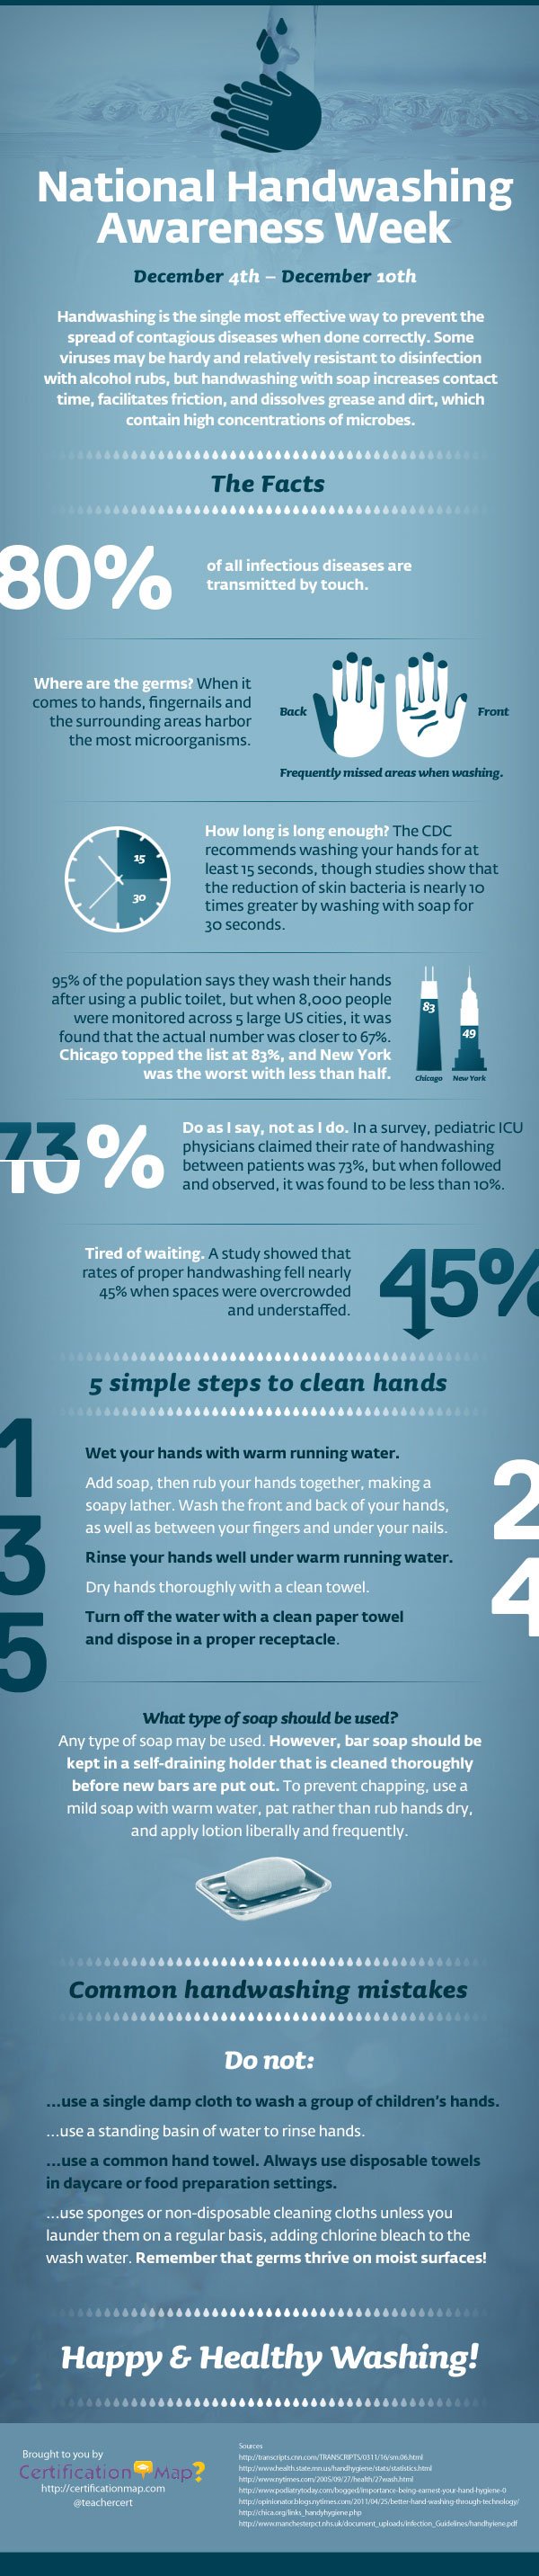 National Handwashing Awareness Week Infographic